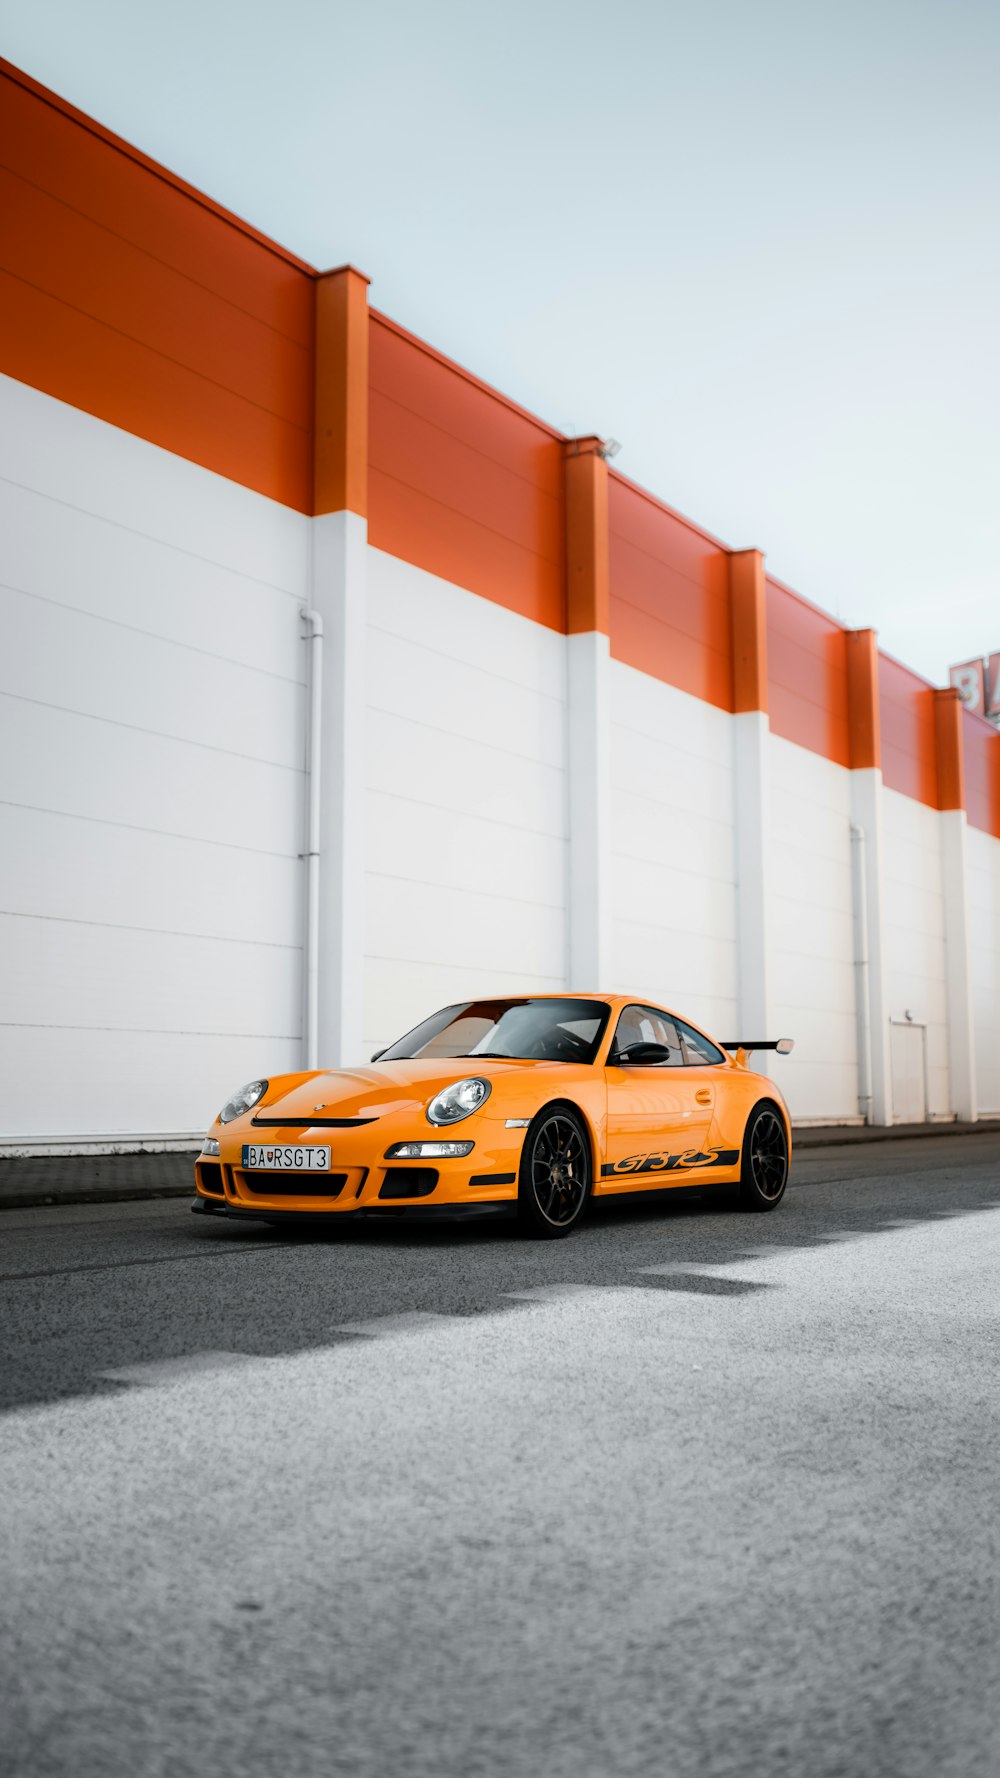 Porsche 911 laranja e preto estacionado ao lado da parede branca e vermelha